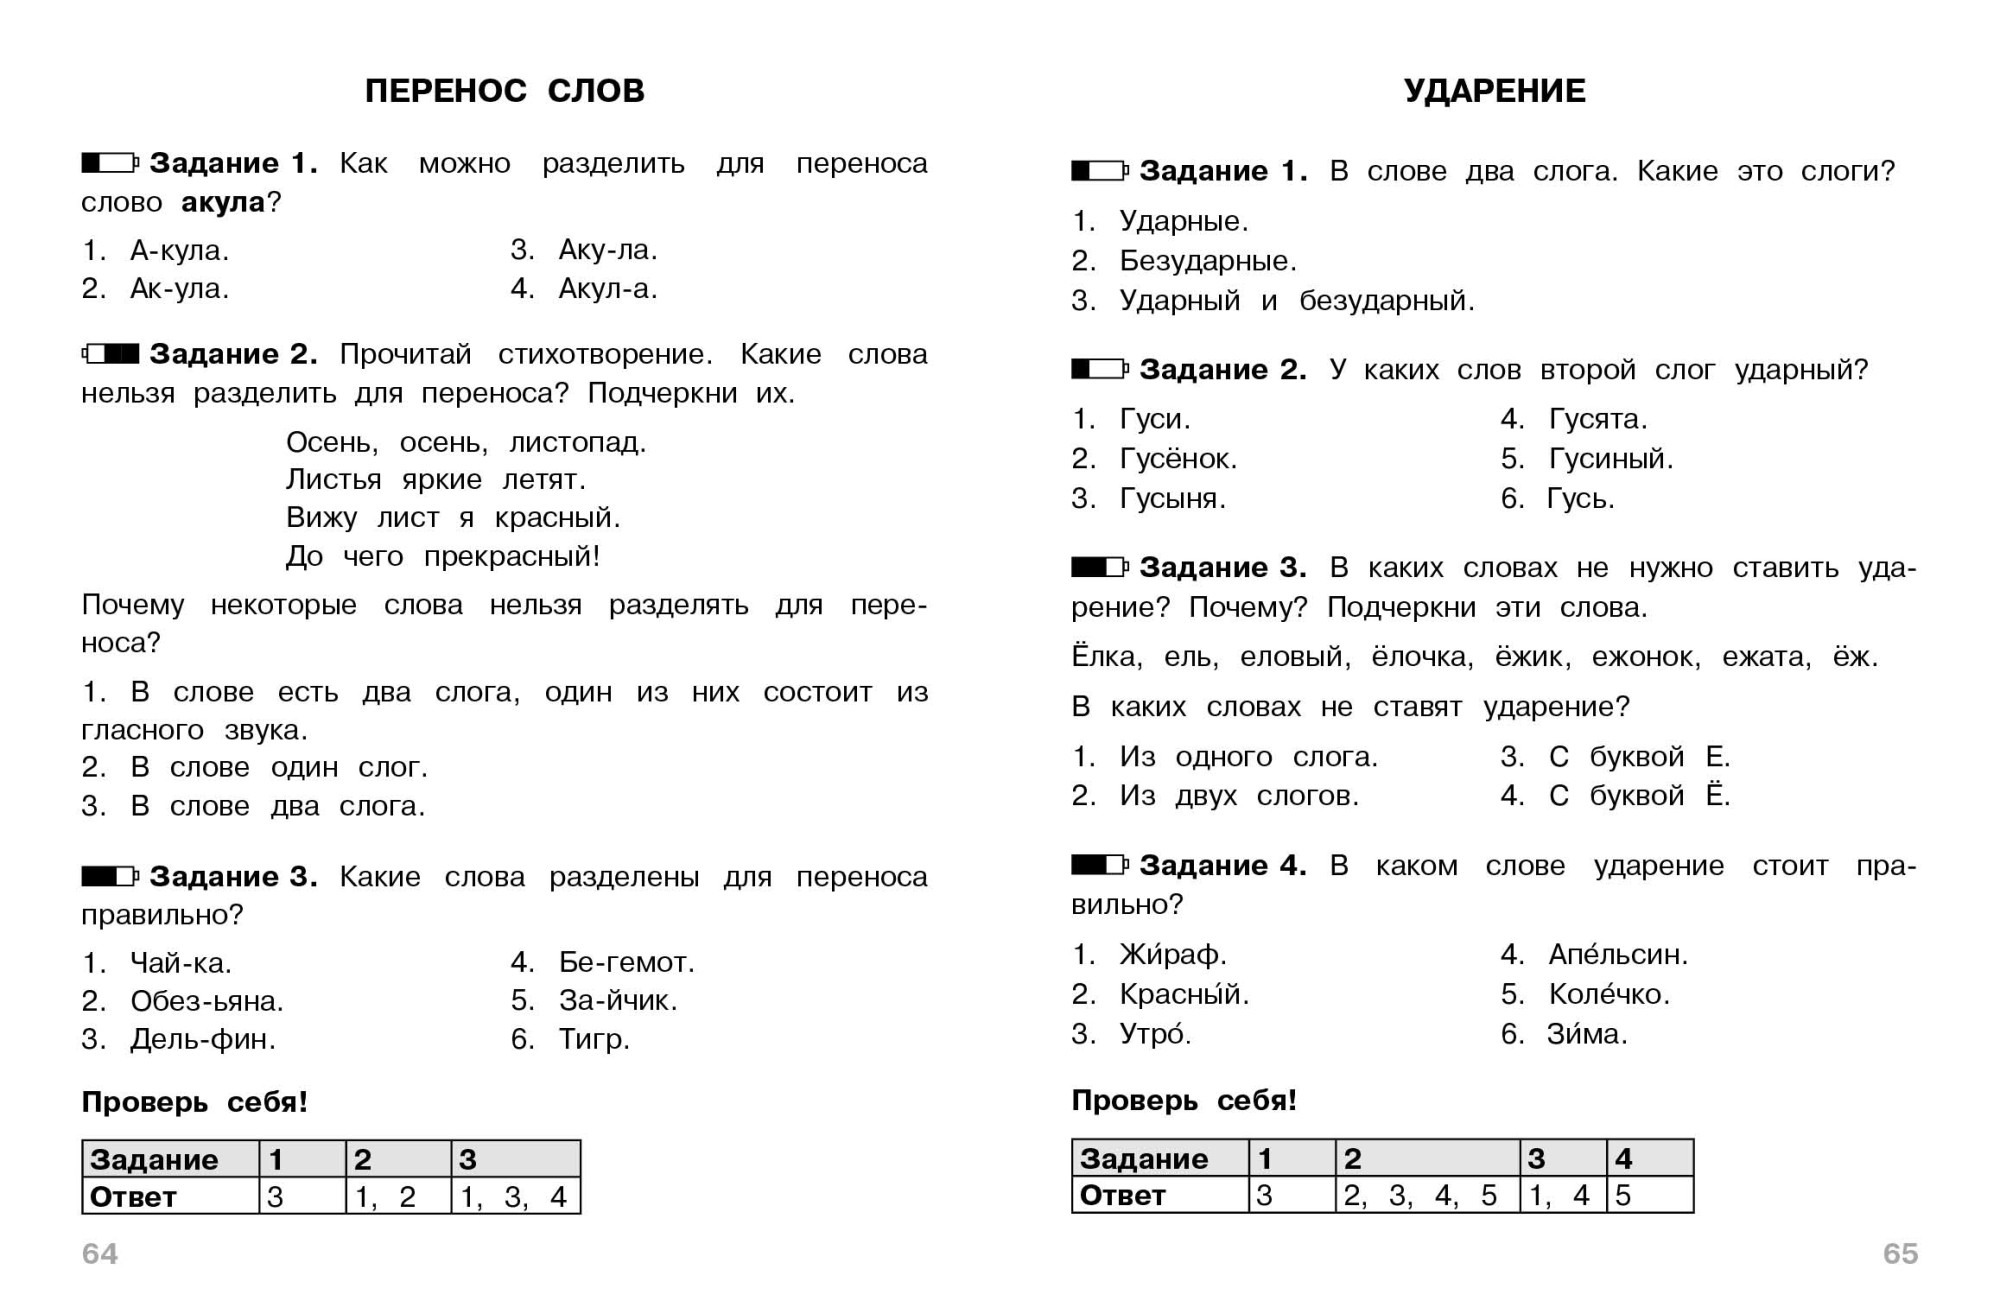 Тест по русскому языку второму классу